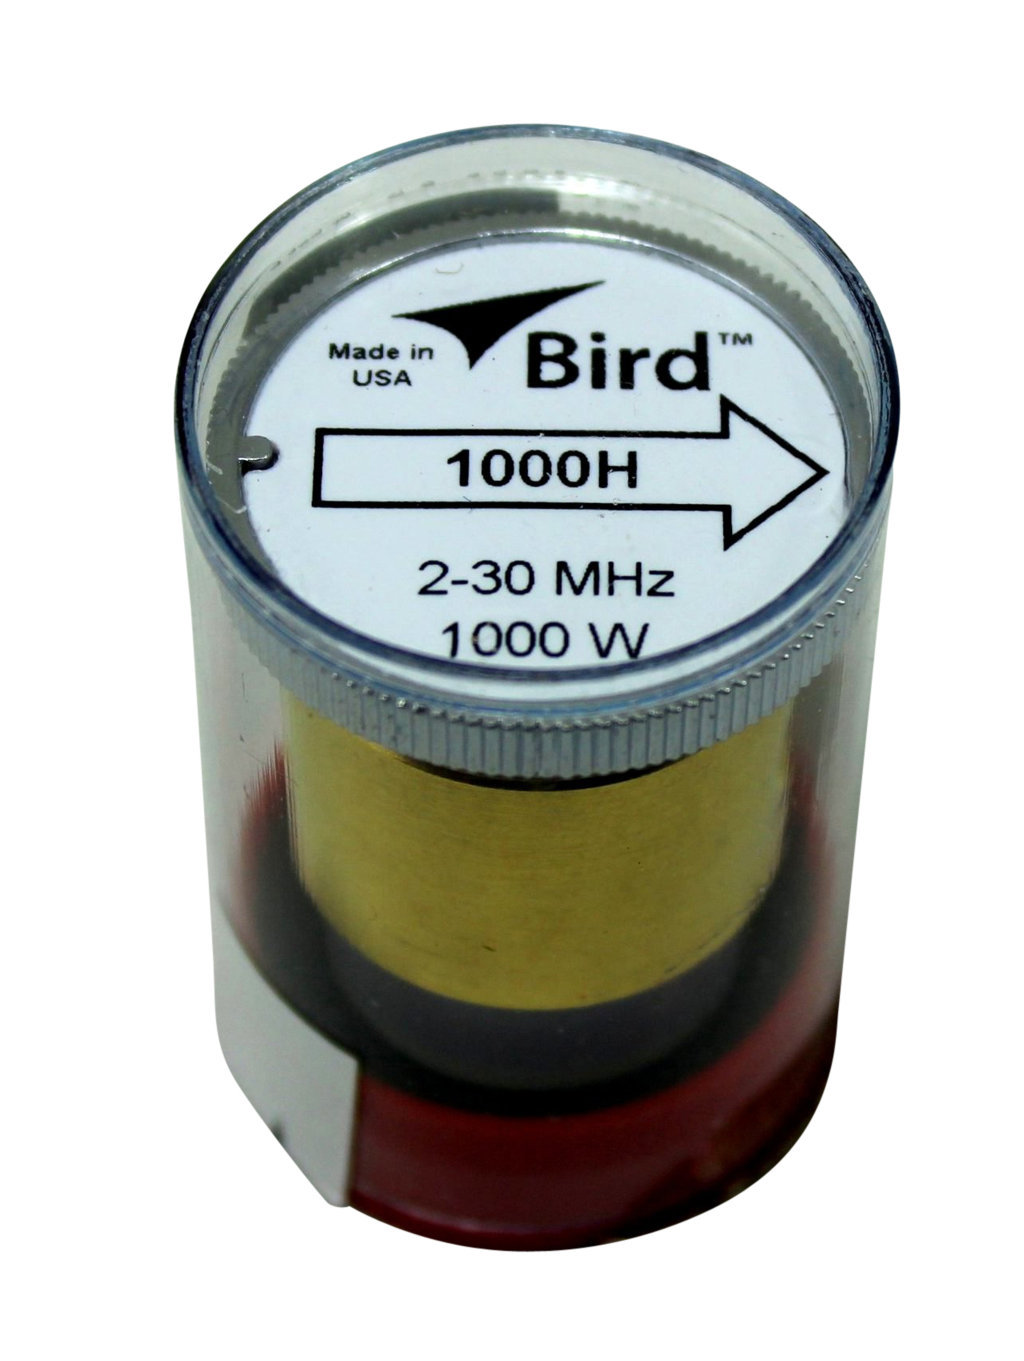 Bird Element 1000H 1000W 2-30 MHz